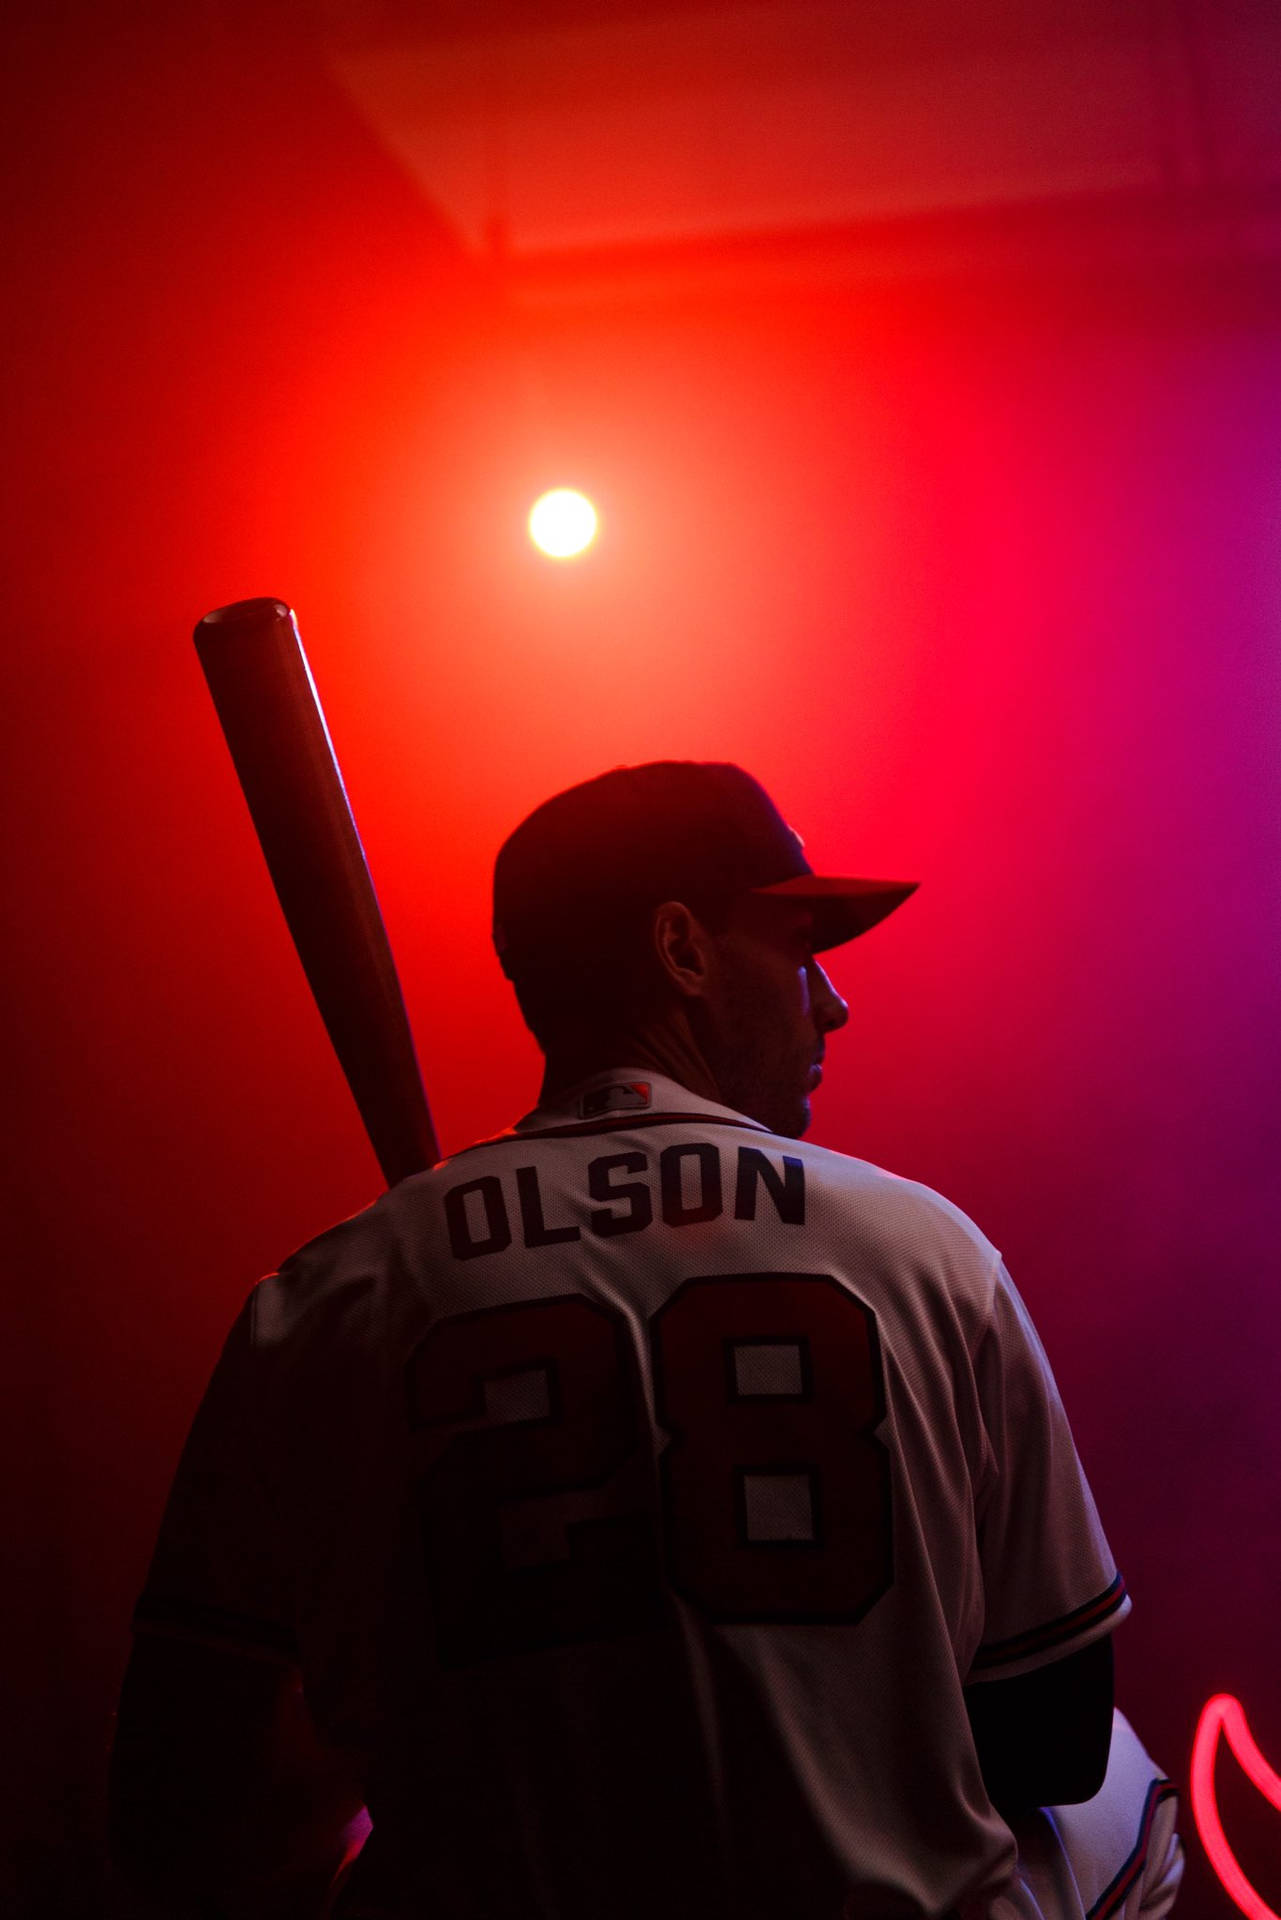 Matt Olson Holding Bat Red Light Wallpaper